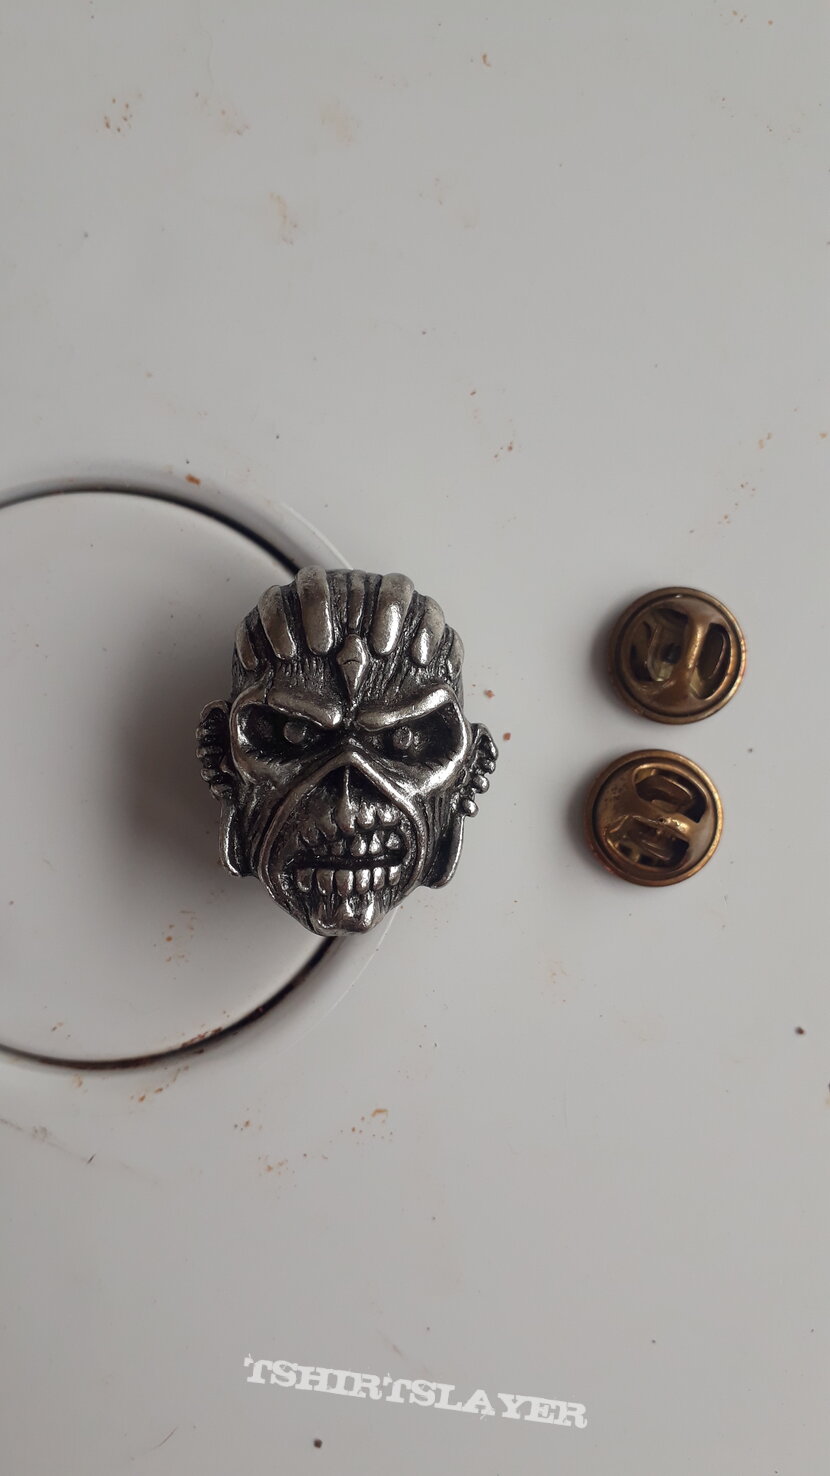 Iron Maiden pin